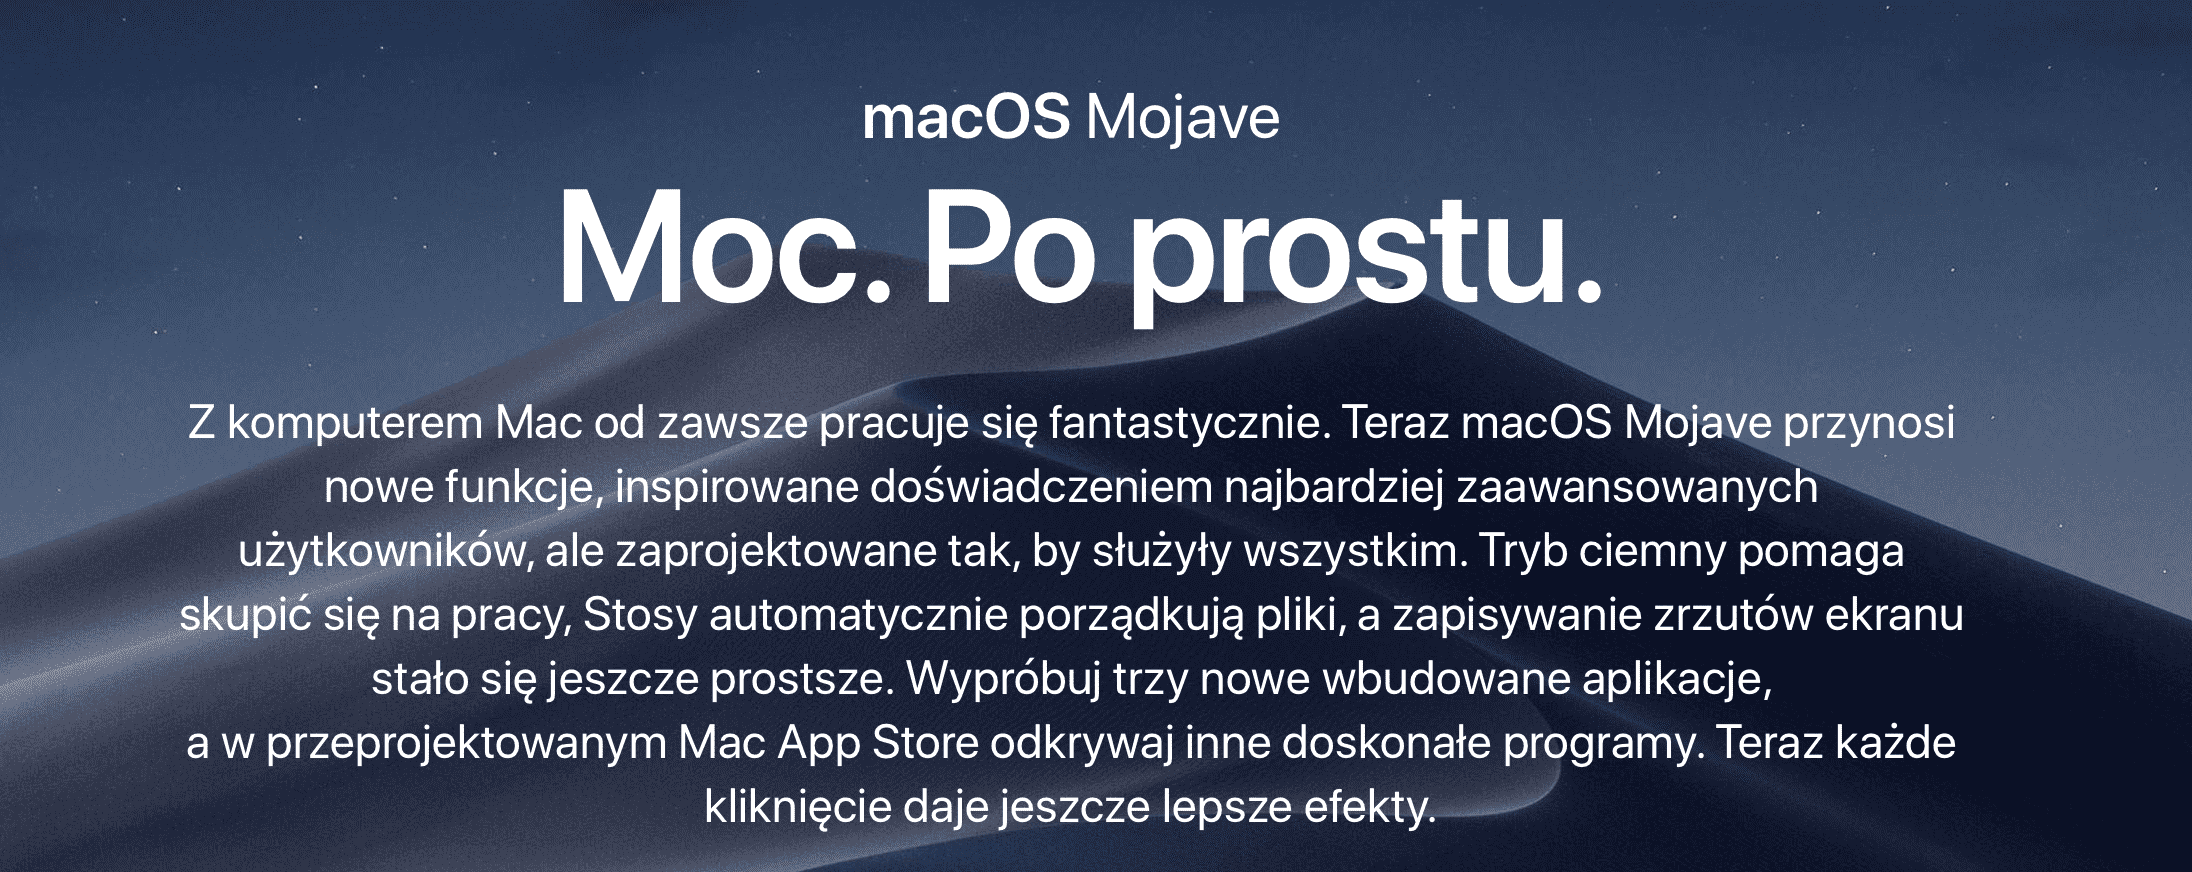 MacOS 10.14.1 dostępny dla wszystkich polecane, ciekawostki macos mojave, lista zmian w macOS Mojave, lista zmian, co nowego w macOS Mojave, Apple  Ostatnim systemem jaki został udostępniony dziś wszystkim użytkownikom jest macOS 10.14.1 Mojave. Co zostało zmienione w udostępnionej dziś wersji? mojave 1